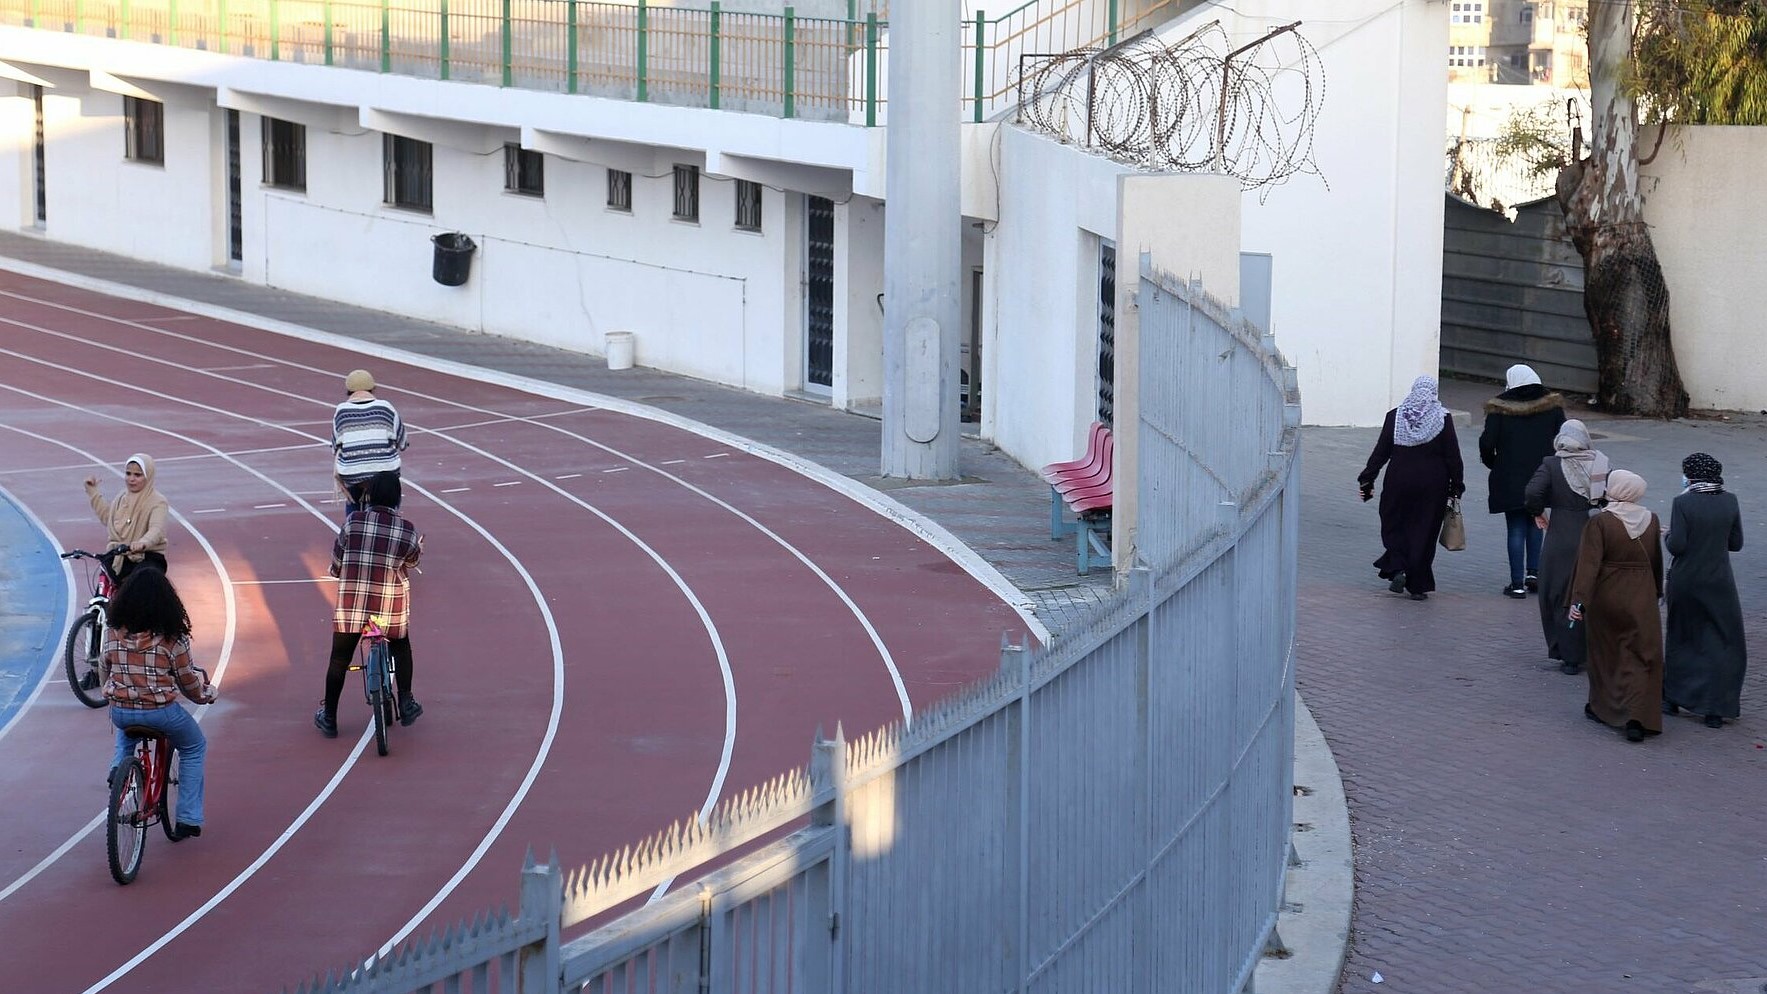 لا يُسمح للنساء بركوب الدراجة في الأماكن العامة - لذلك أسست لهن رانيا مكاناً في الملعب - غزة. Women are not allowed to ride a bicycle in public. So Rania founded a place for them in a stadium (photograph: Samar Abou Elouf)